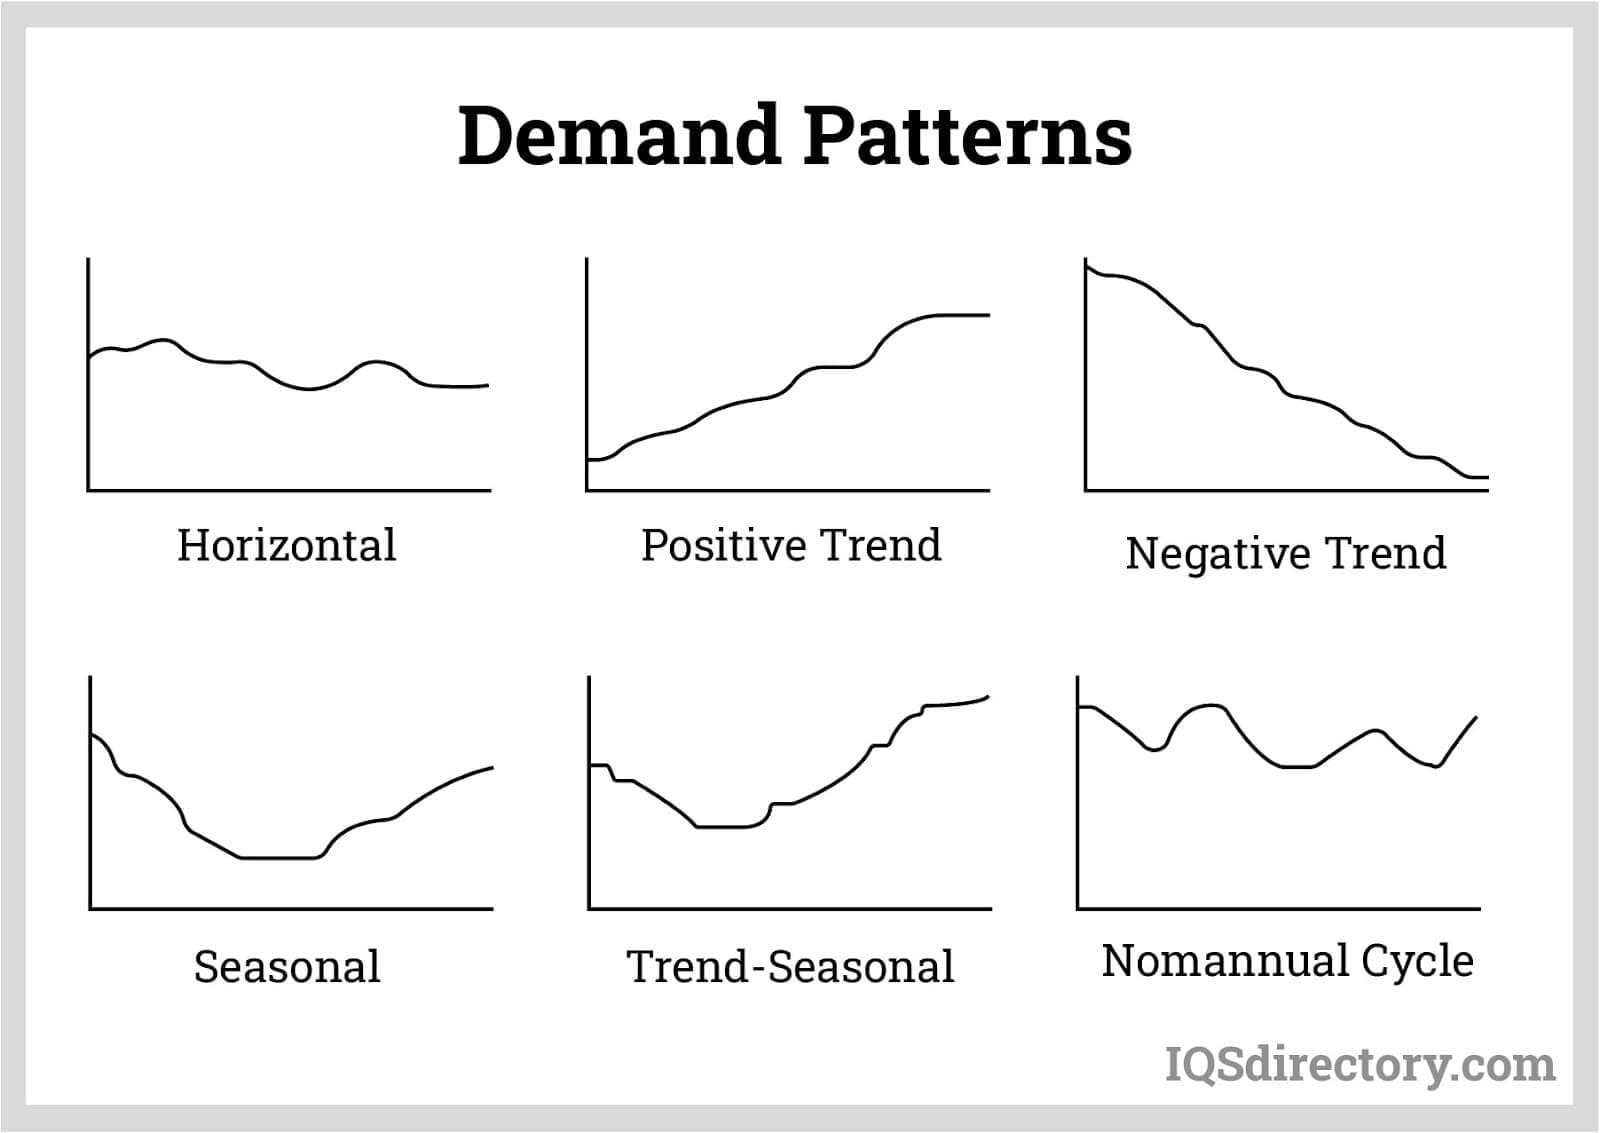 Demand Patterns